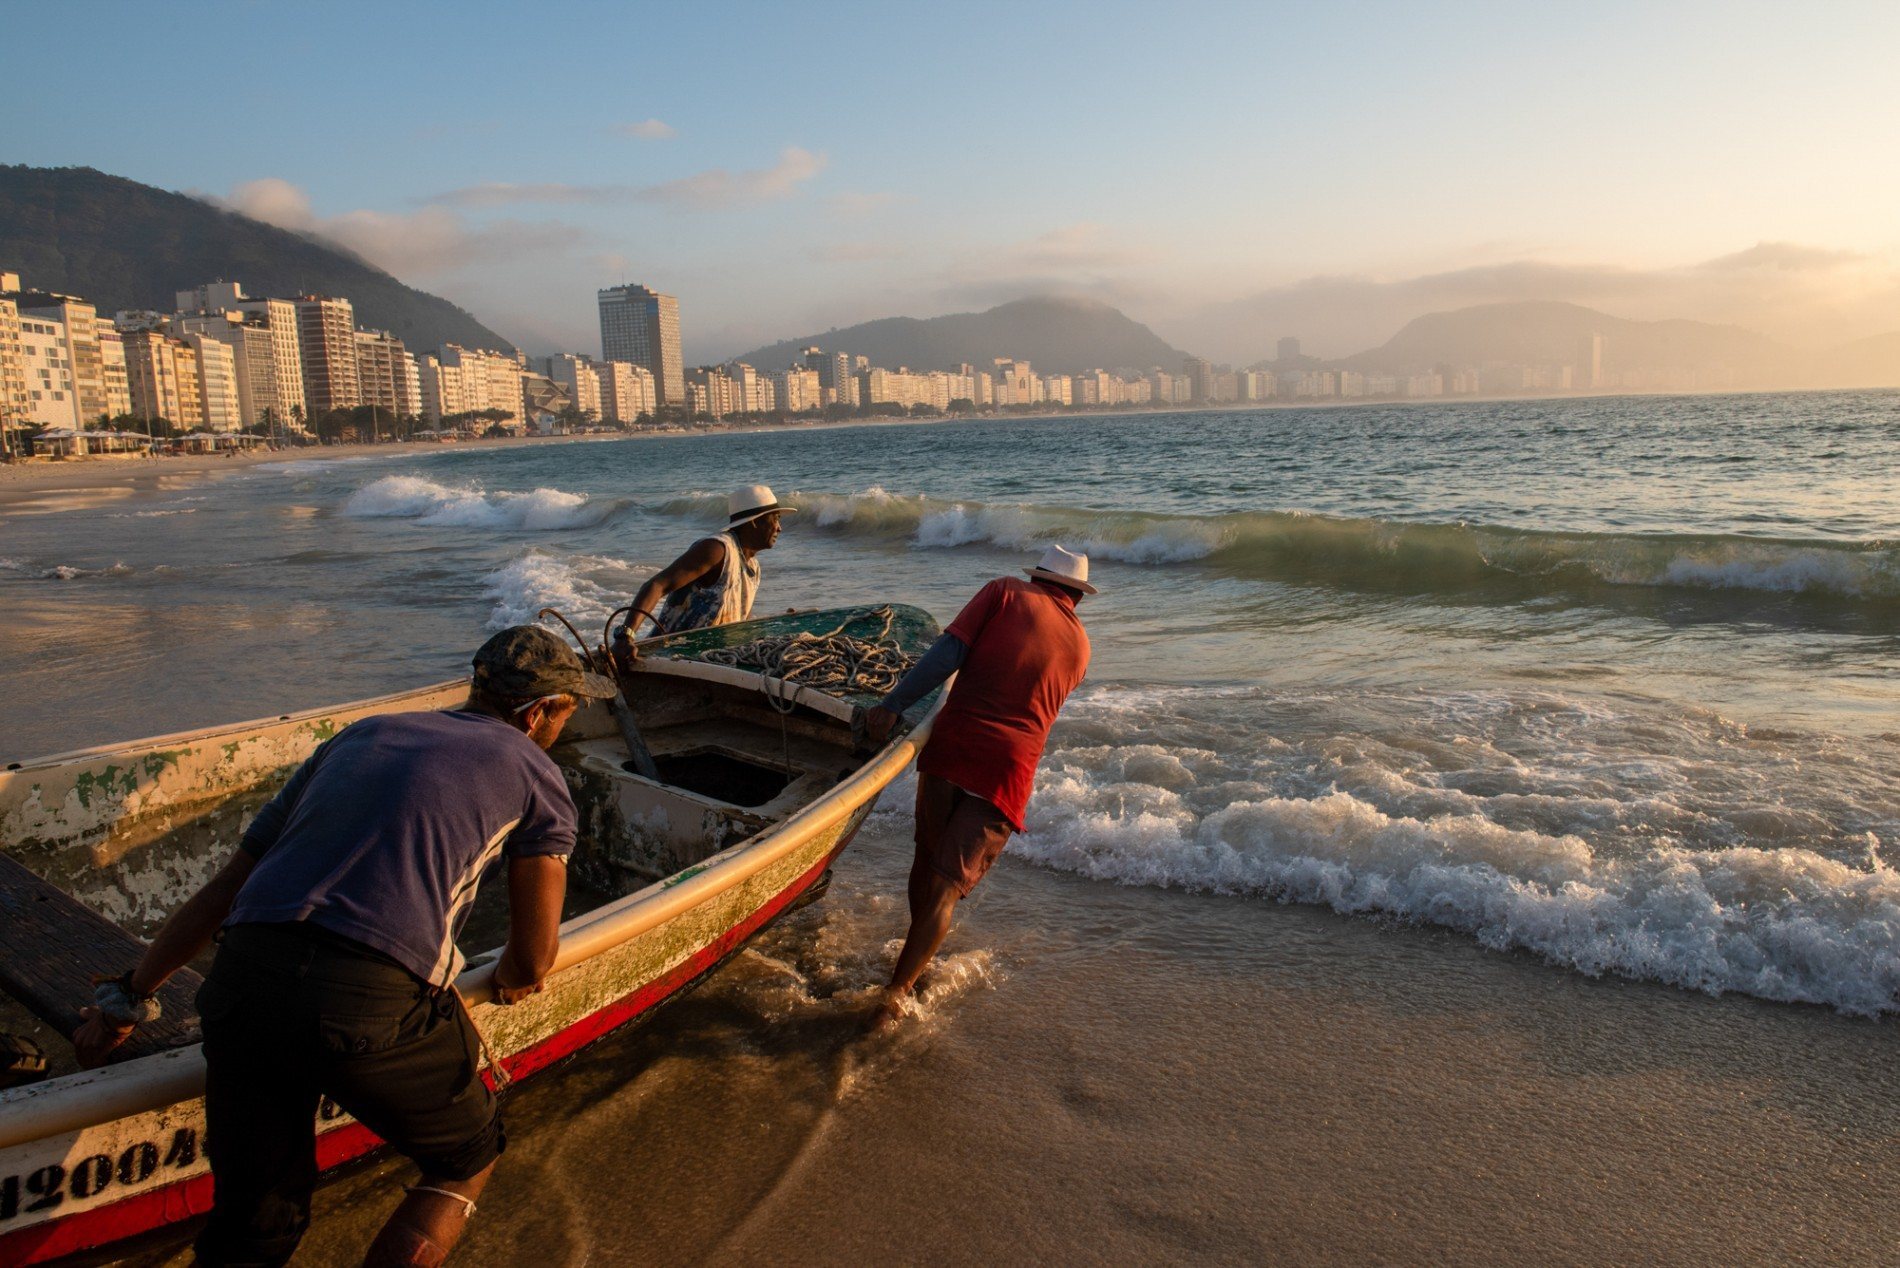 Copacabana está com Navio de série da Netflix para visitação gratuita -  Orla Rio